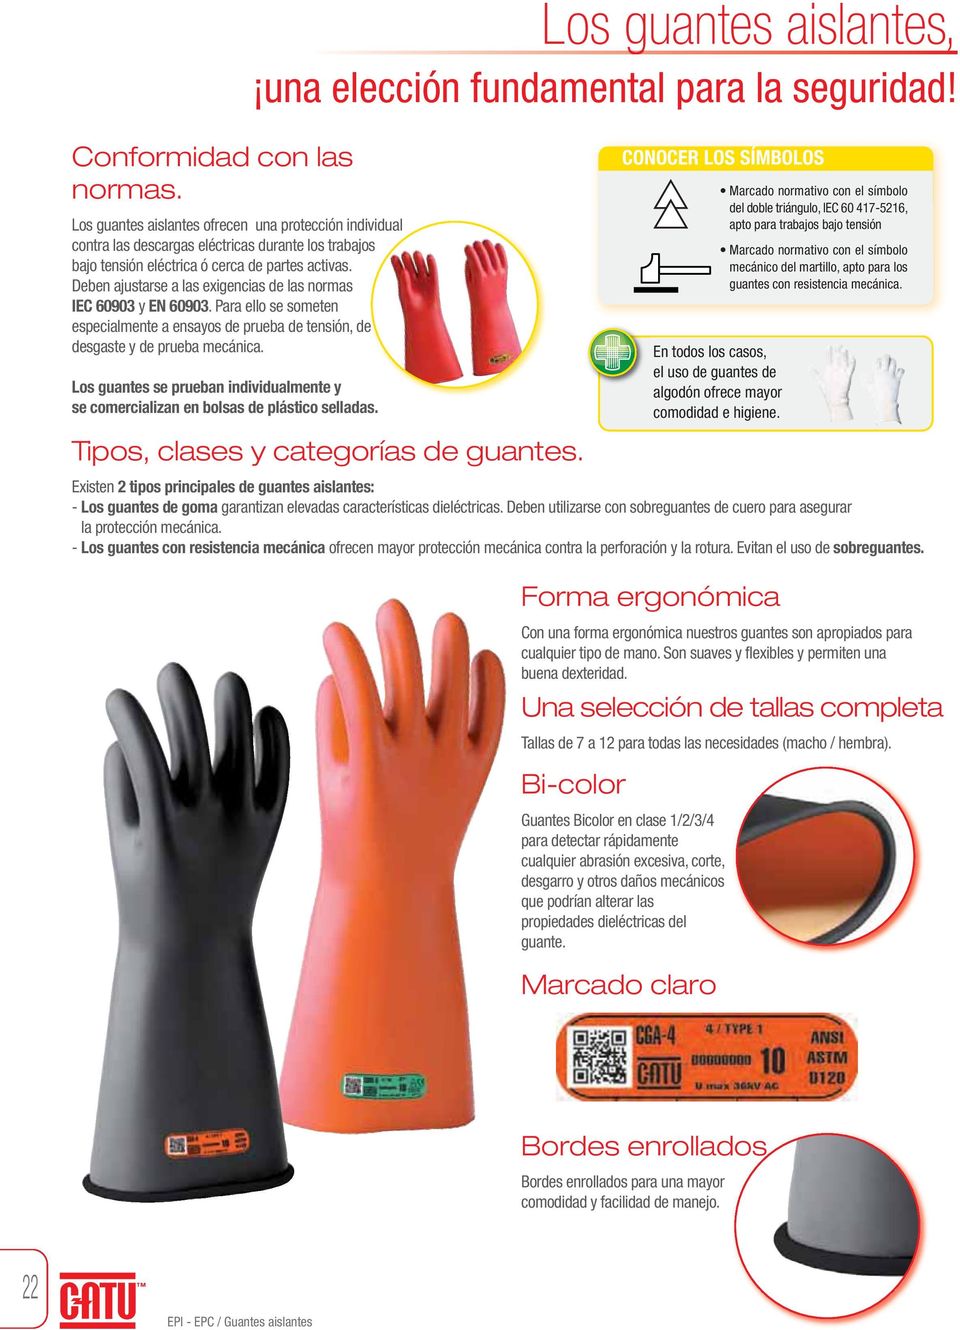 Los guantes aislantes, una elección para la seguridad! - PDF Descargar